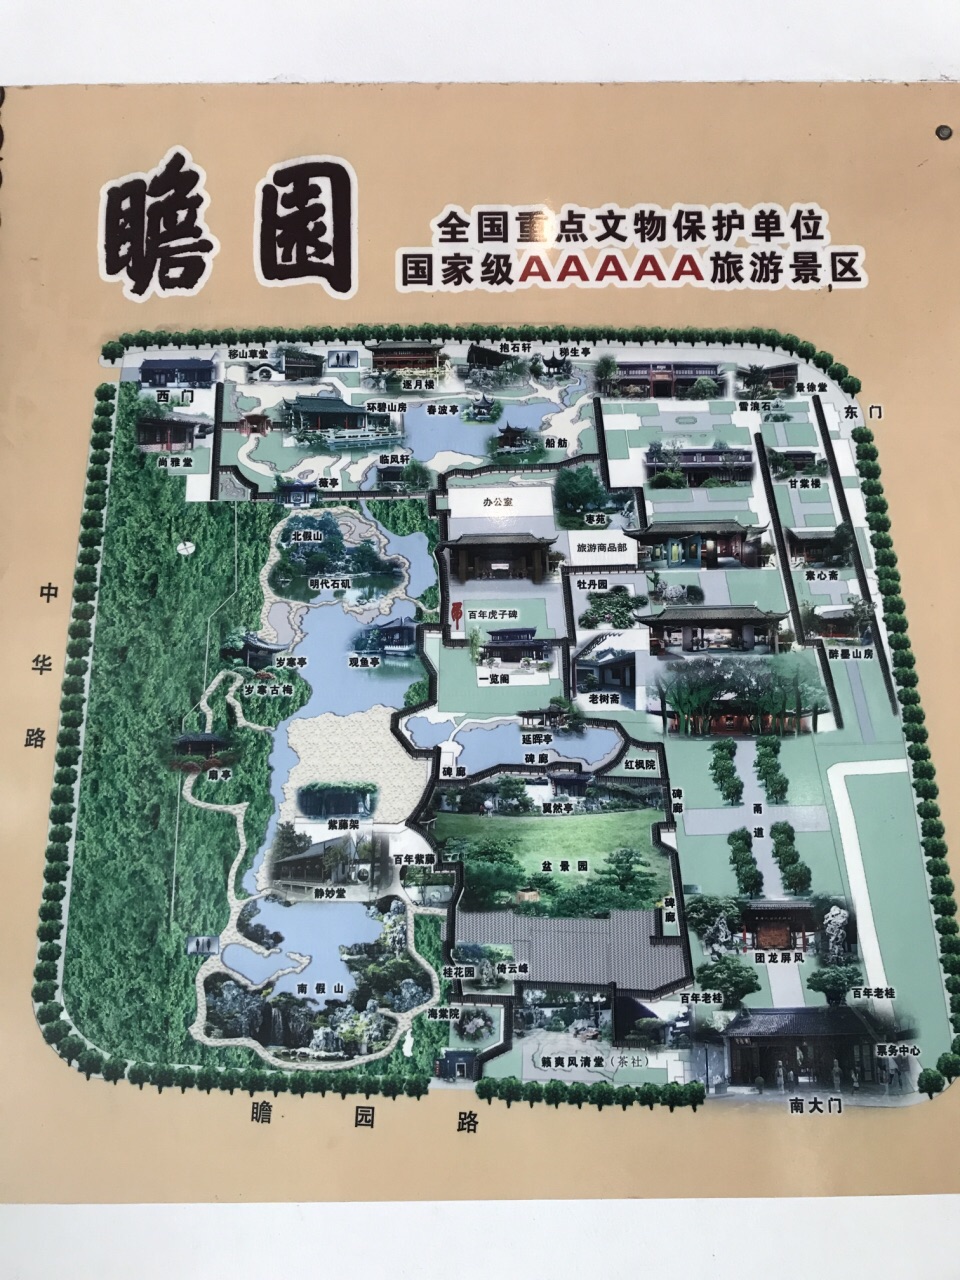 【携程攻略】南京瞻园景点,作为位置最中心的园林,游客自然不少